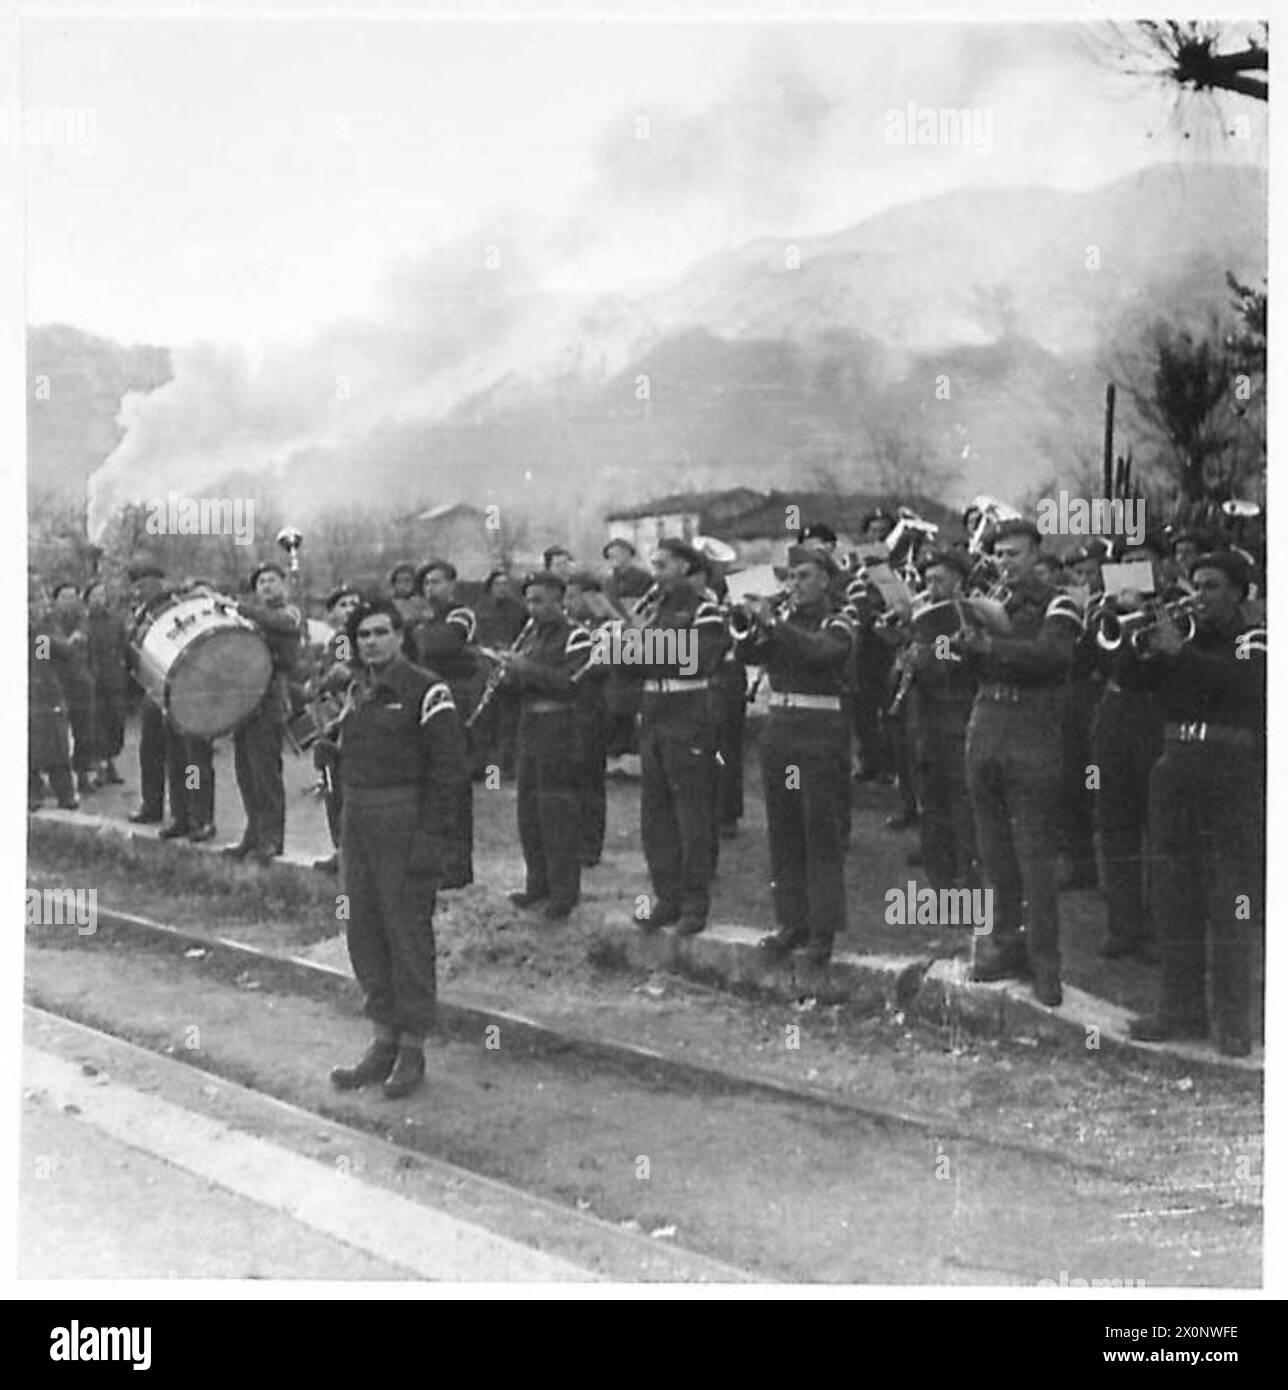 RÜCKFÜHRUNG DER TRUPPEN DES 2. POLNISCHEN KORPS VON ITALIEN NACH POLEN, 1945-1946 - Eine polnische Armeeband, die am 13. Dezember 1945 um 8.00 Uhr bei der Abreisezeremonie in Cervinara spielt. Die Nationalhymnen werden gespielt, während Beamte stehen, nachdem sie die Männer verabschiedet haben. Die Sequenz von NA 26518 - NA 26533 wurde während der Dreharbeiten zu einem Film über die Rückführung polnischer Truppen aus Italien aufgenommen. Dieser Film wurde speziell von den britischen Auswärtigen und Kriegsministerien angefordert.nach einer Vereinbarung in Wien vom 12. November 1945, zwischen dem alliierten Kommando in Italien, Russland, Polen A Stockfoto